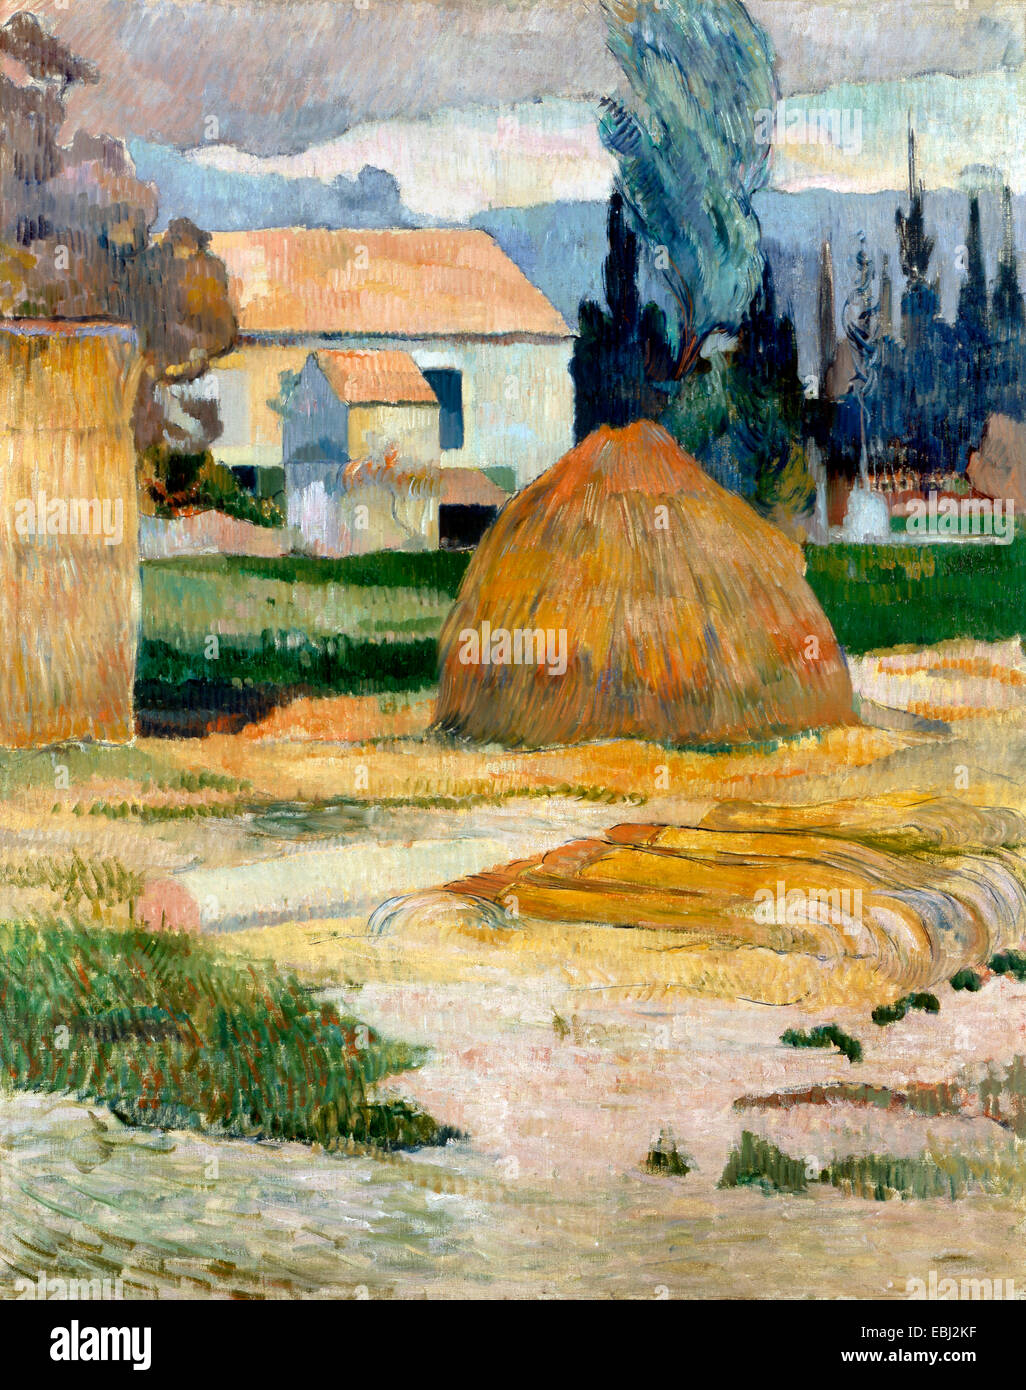 Paul Gauguin, Paysage près de Arles 1888 Huile sur toile. Musée d'art d'Indianapolis, Indiana, USA. Banque D'Images